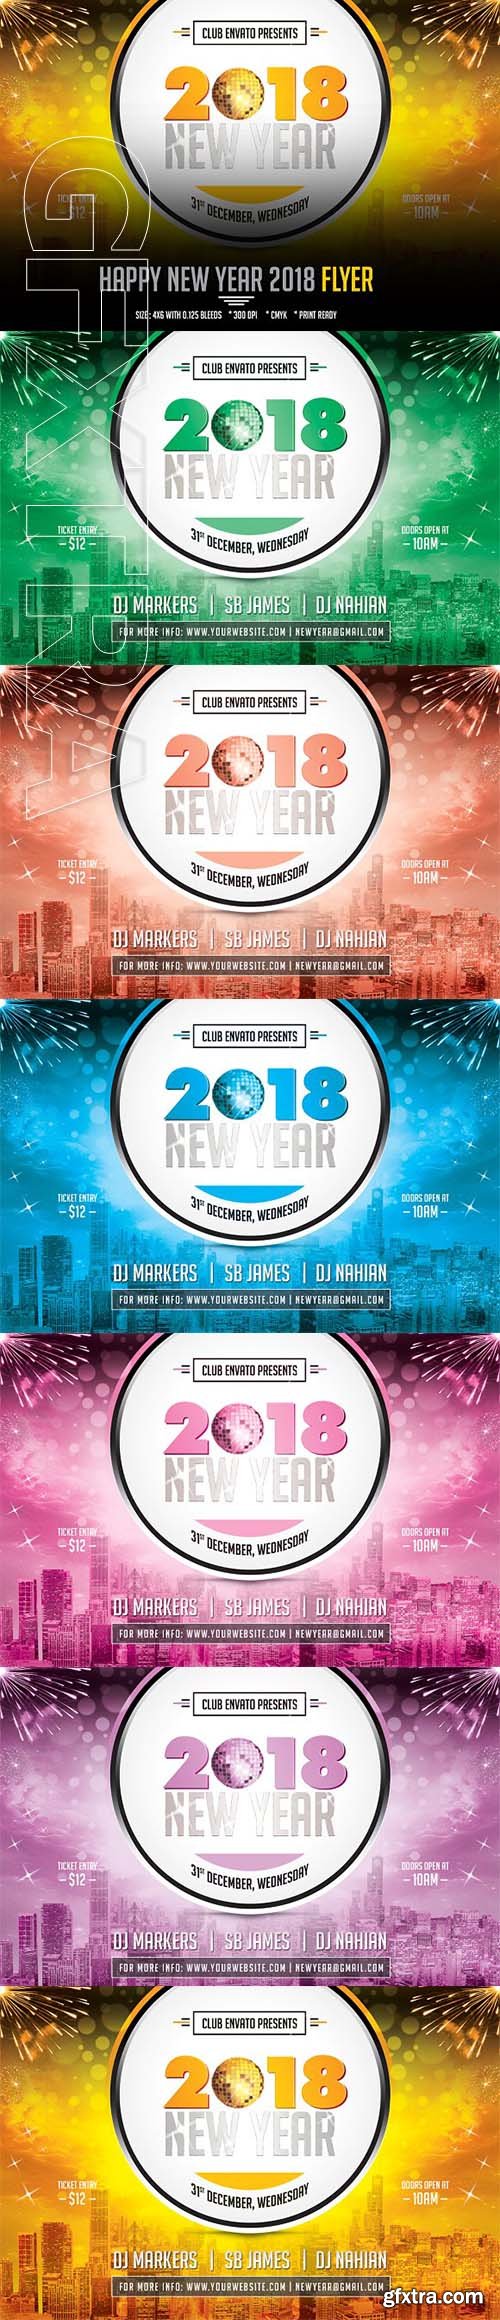 CreativeMarket - 2018 New Year Flyer Design 2110096